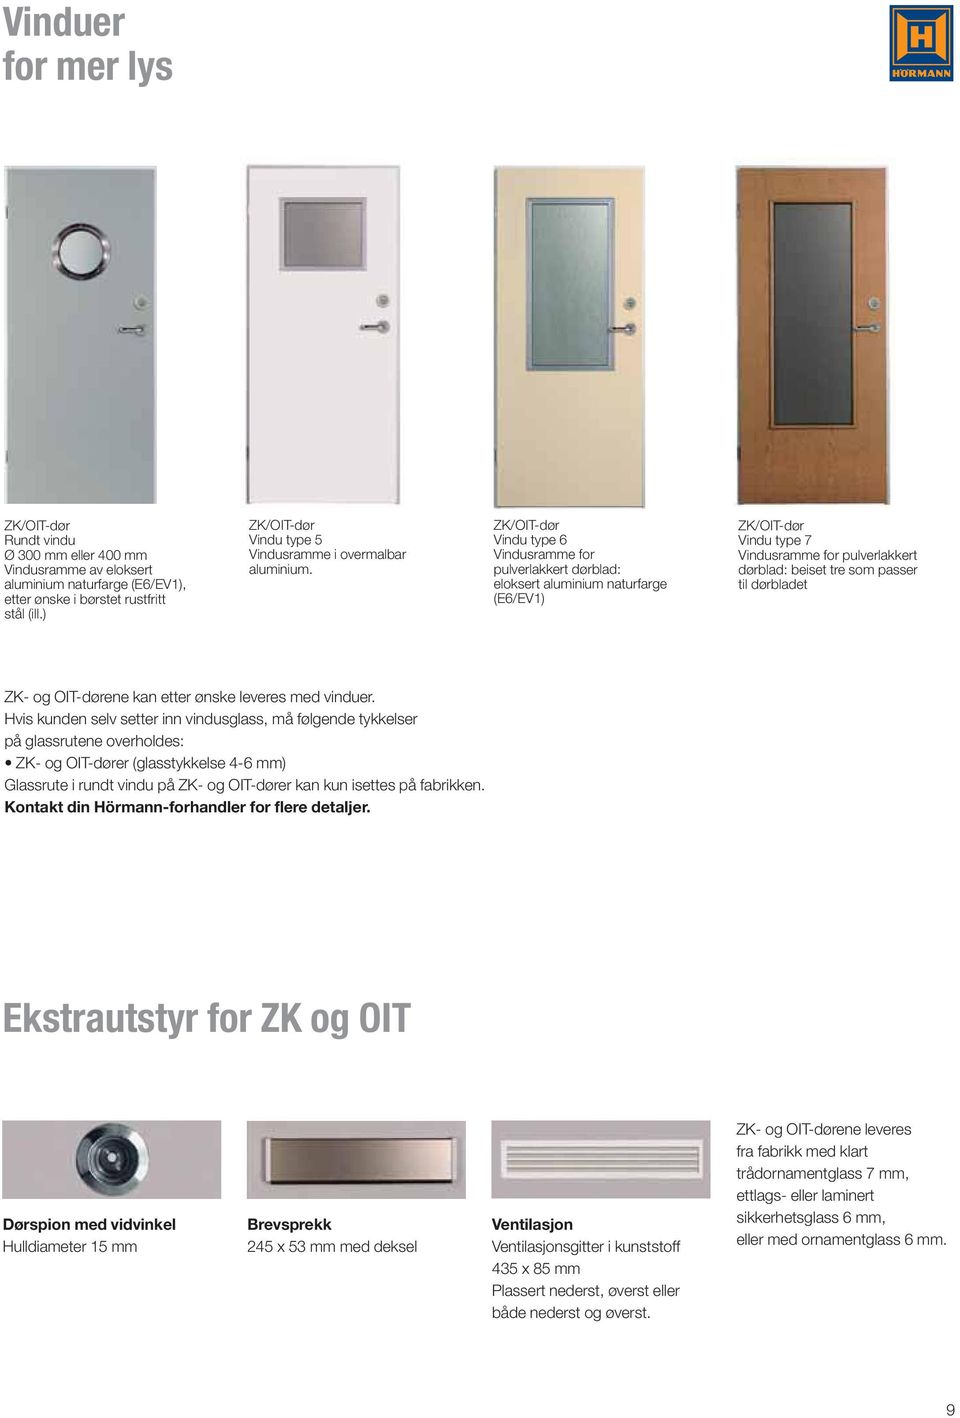 ZK/OIT-dør Vindu type 6 Vindusramme for pulverlakkert dørblad: eloksert aluminium naturfarge (E6/EV1) ZK/OIT-dør Vindu type 7 Vindusramme for pulverlakkert dørblad: beiset tre som passer til